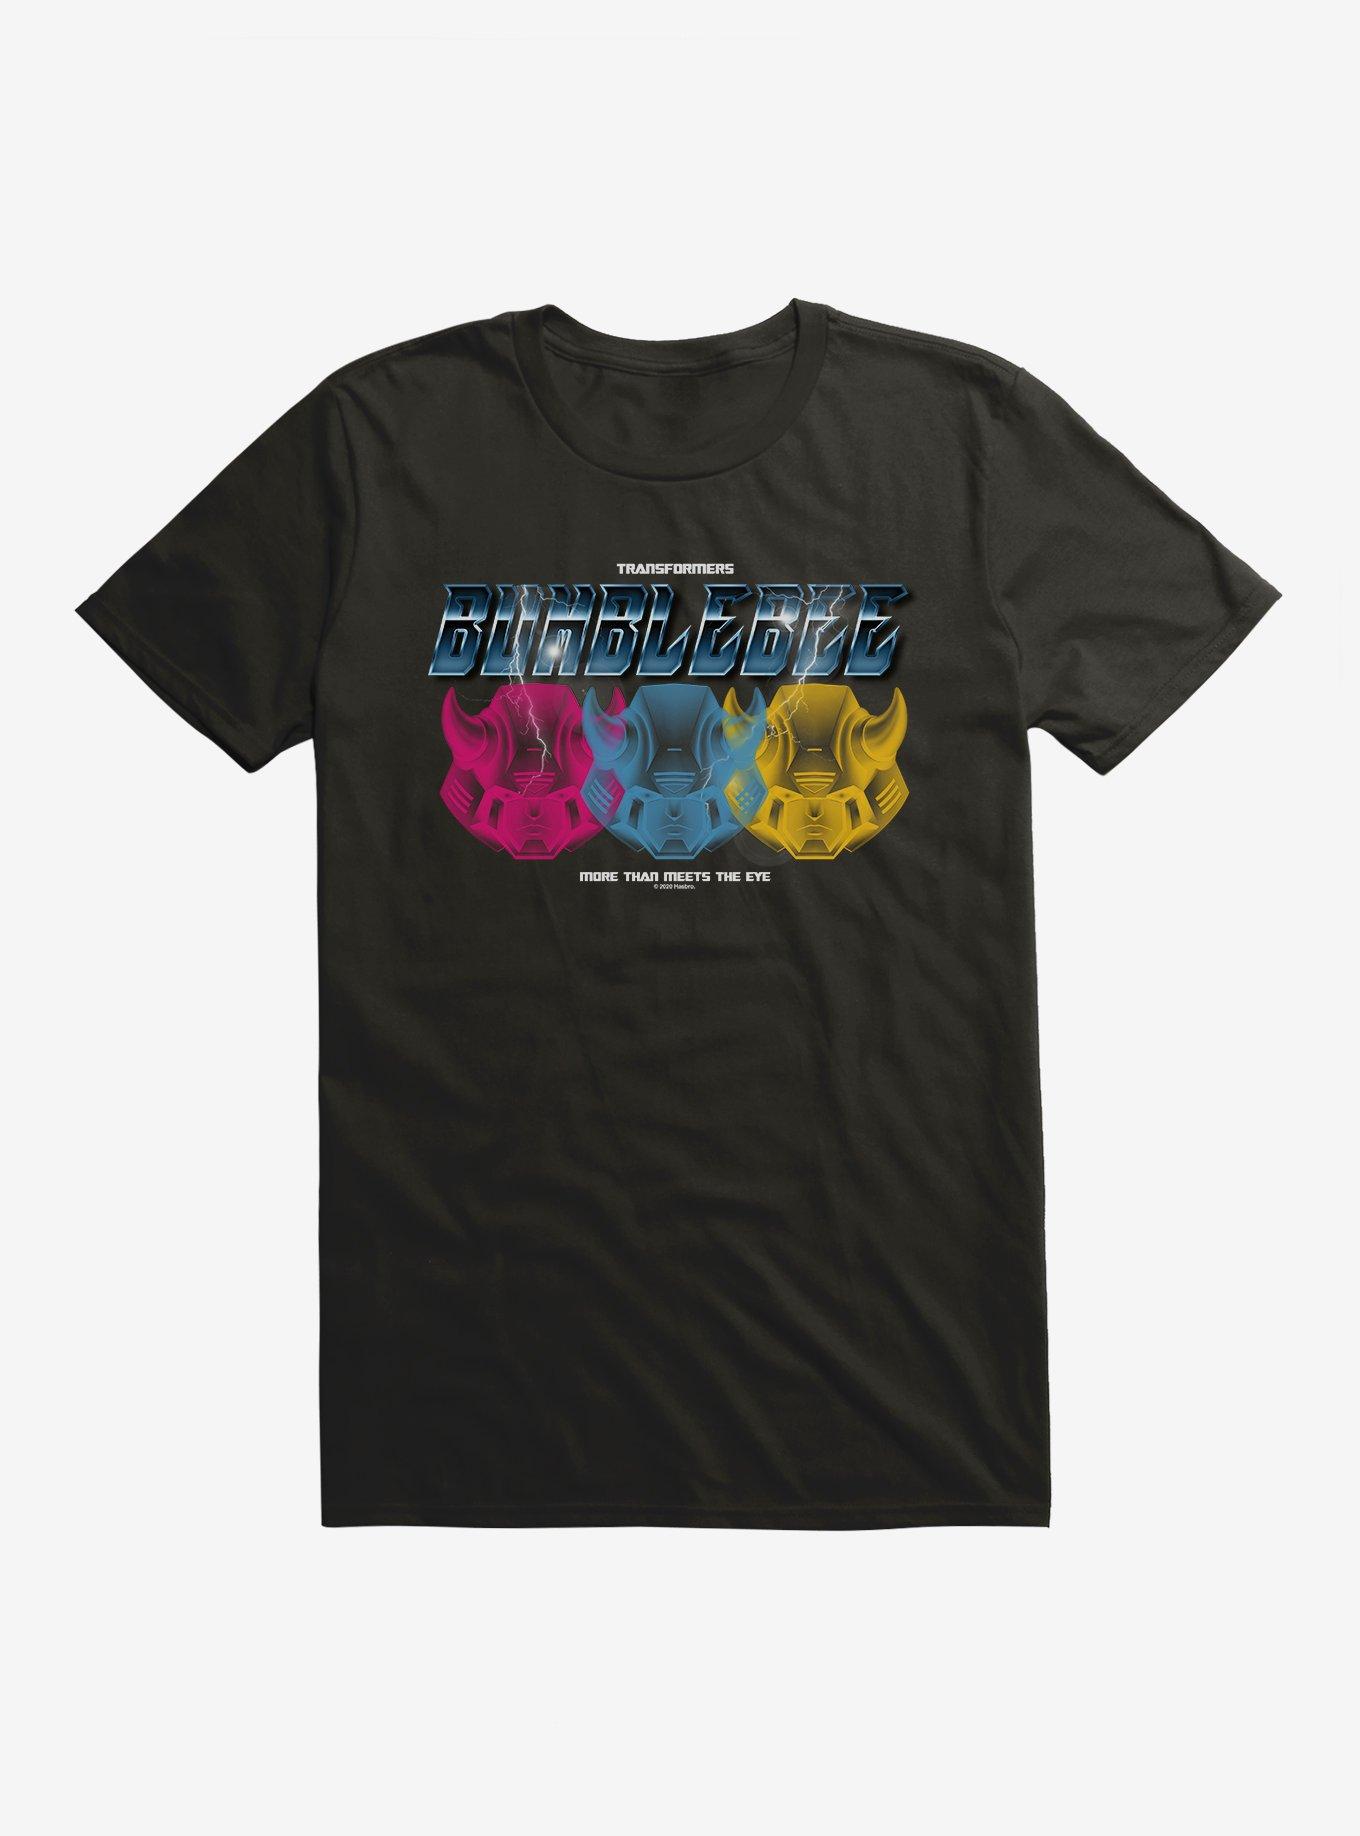 Transformers Bumblebee T-Shirt, , hi-res